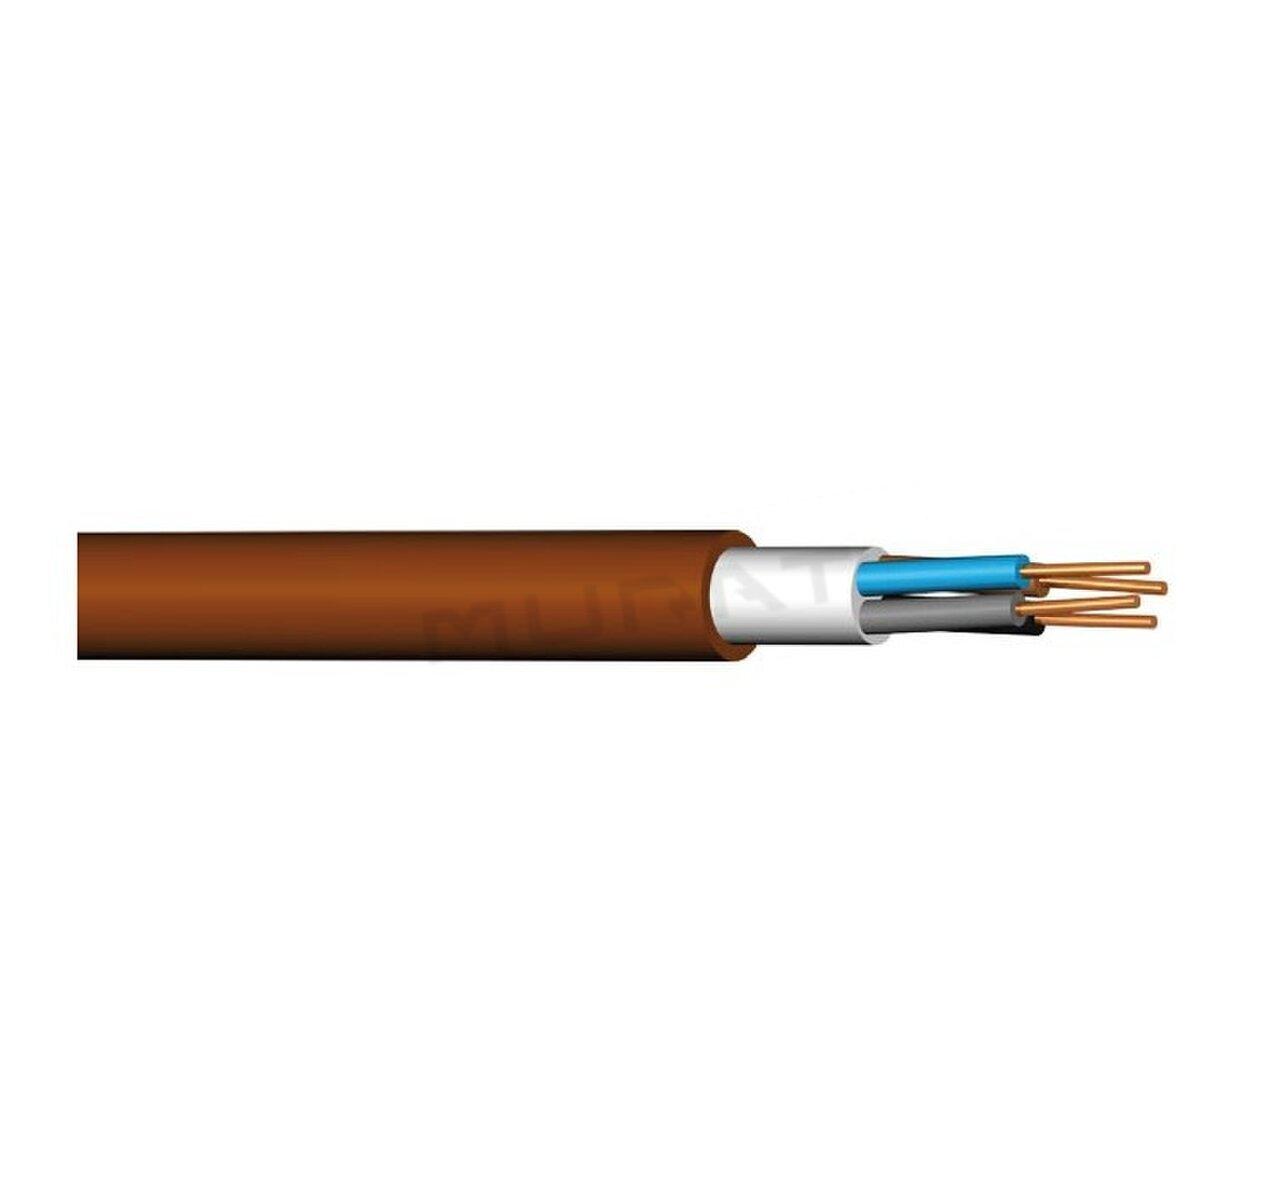 Kábel PRAFlaDur-O 4x2,5 mm2 RE PH120-R, PS15-PS60, B2cas1d1a1 silový